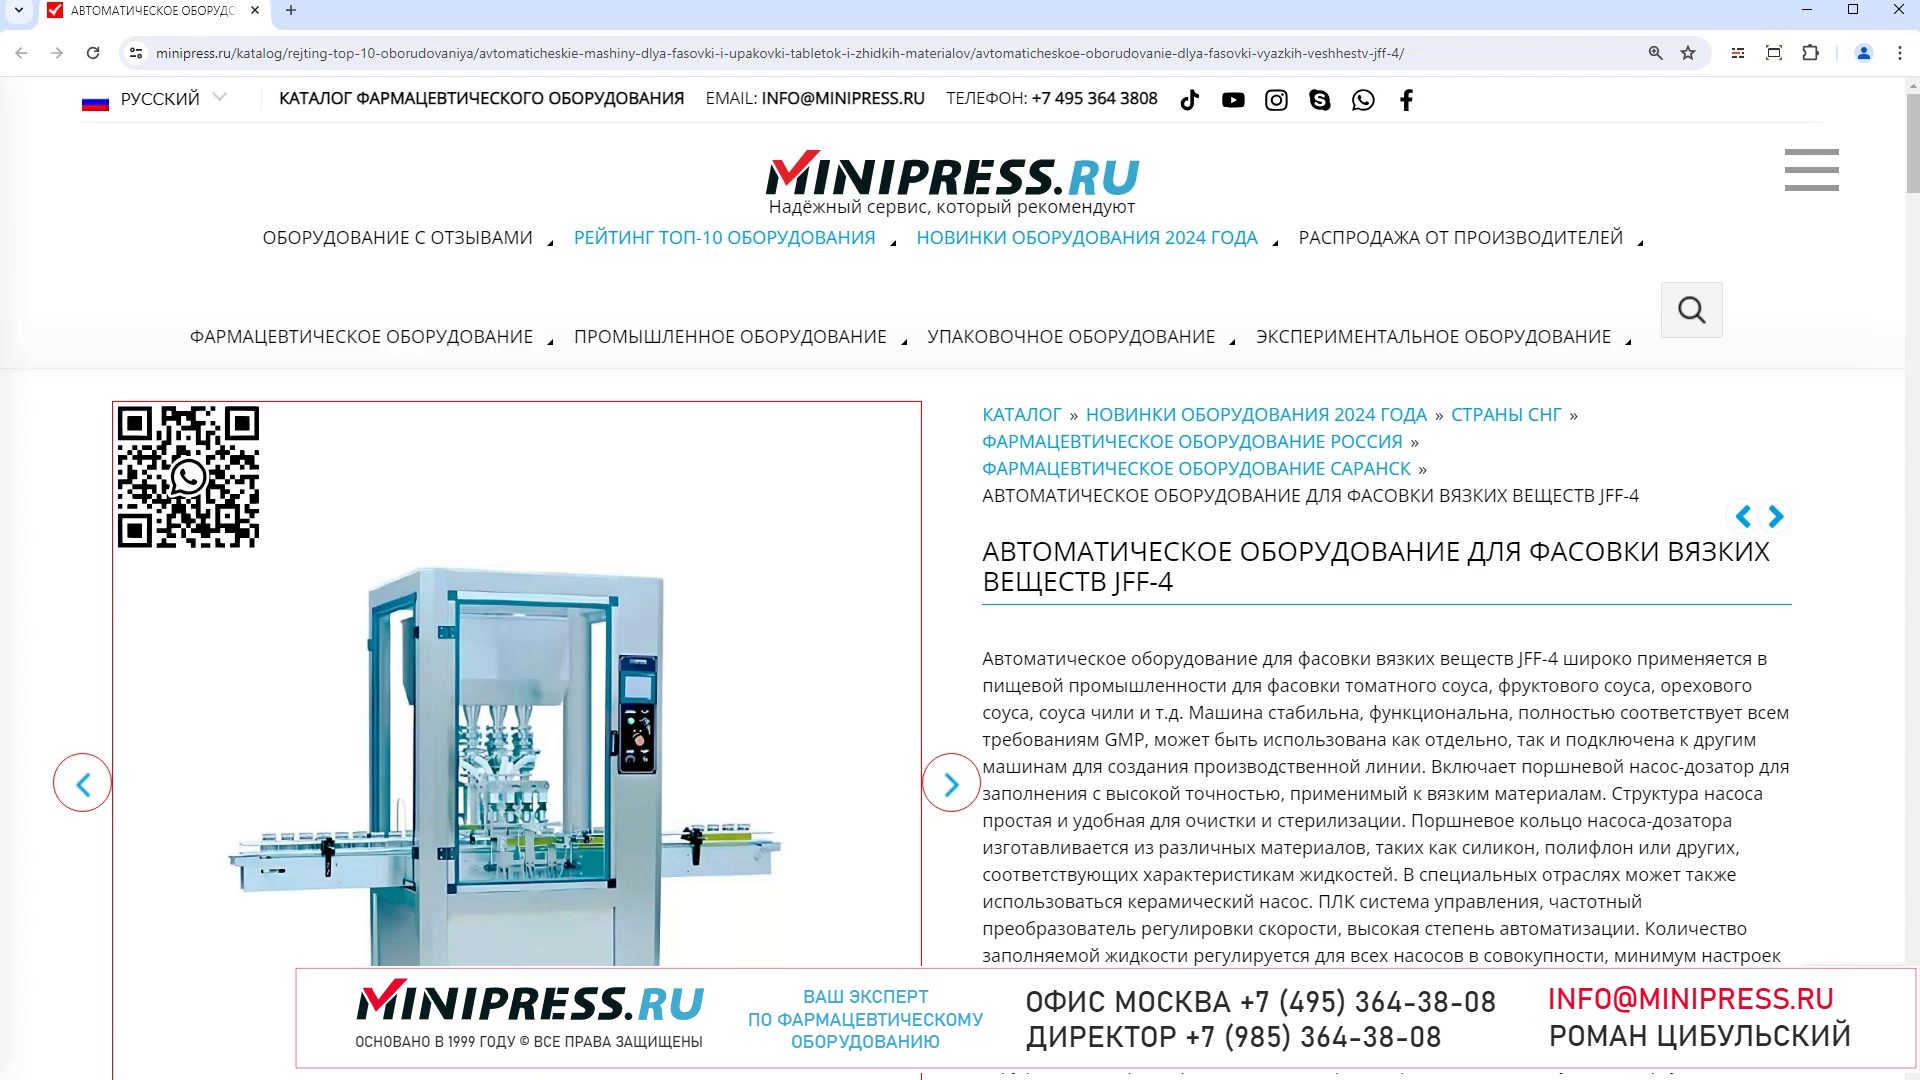 Minipress.ru Автоматическое оборудование для фасовки вязких веществ JFF-4